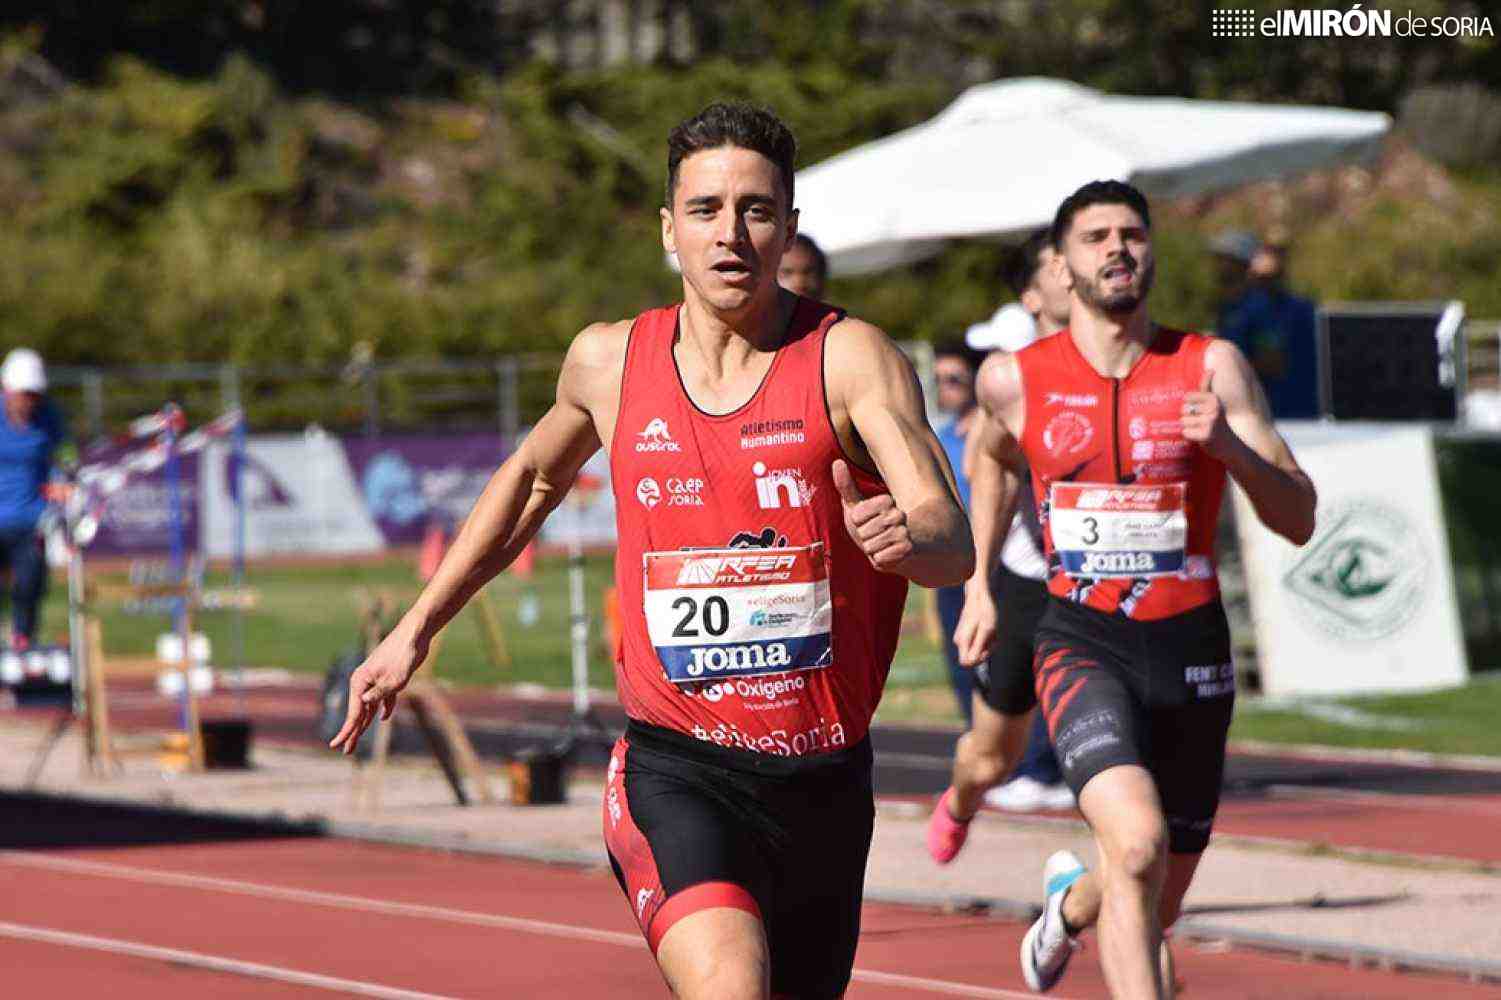 Atletismo Numantino, segundo en Liga Joma en Soria